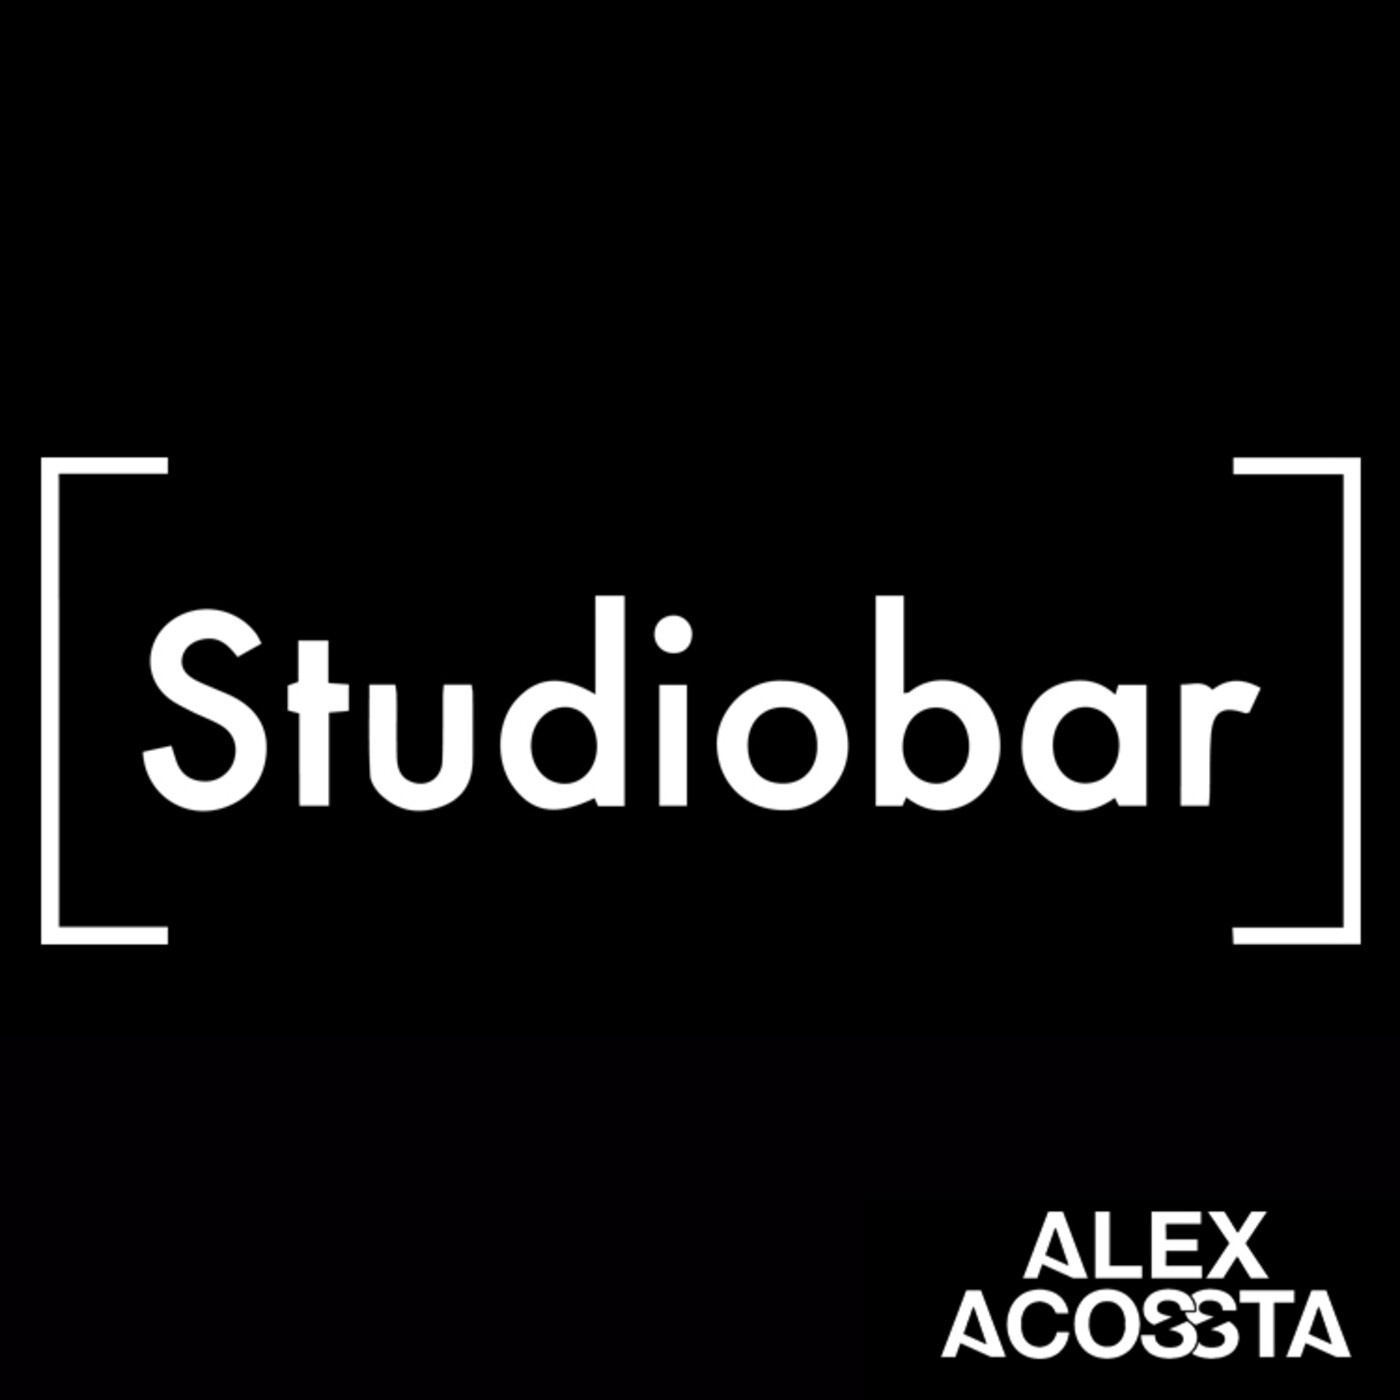 Alex Acossta - Promo Mix 18 - Studiobar Vibes Vol. 1